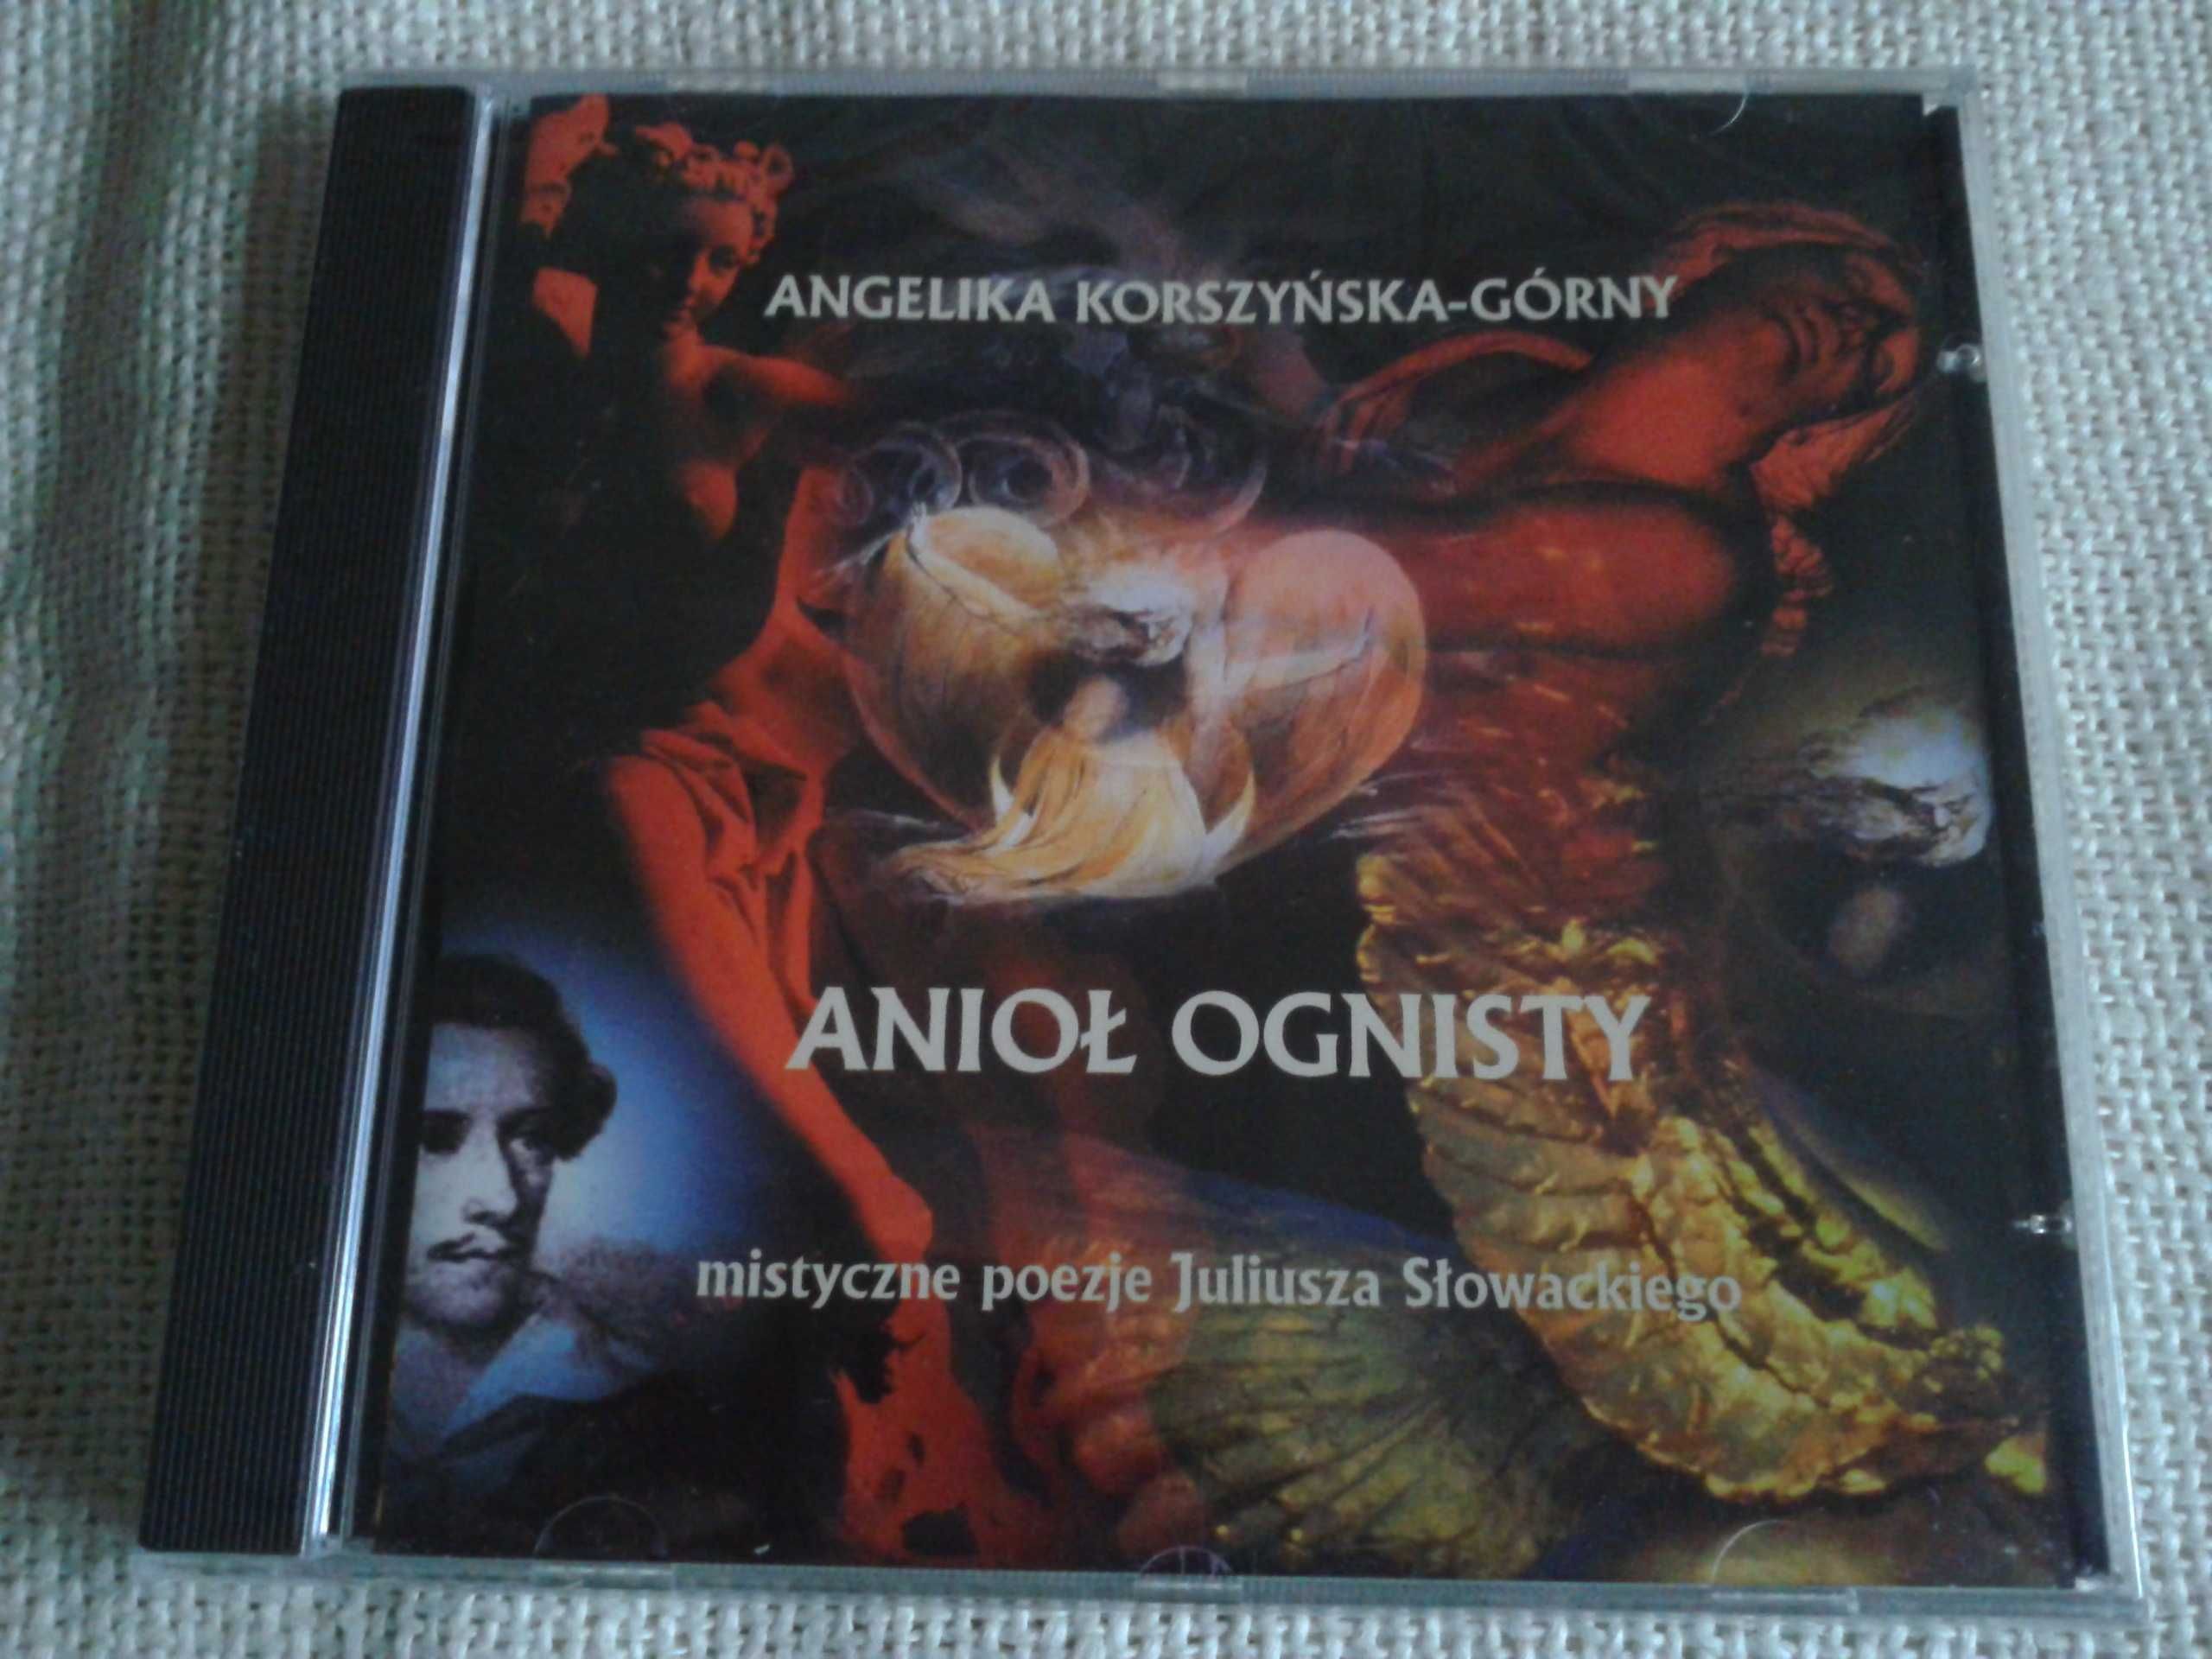 Angelika Korszyńska-Górny  -  Aniol ognisty  CD